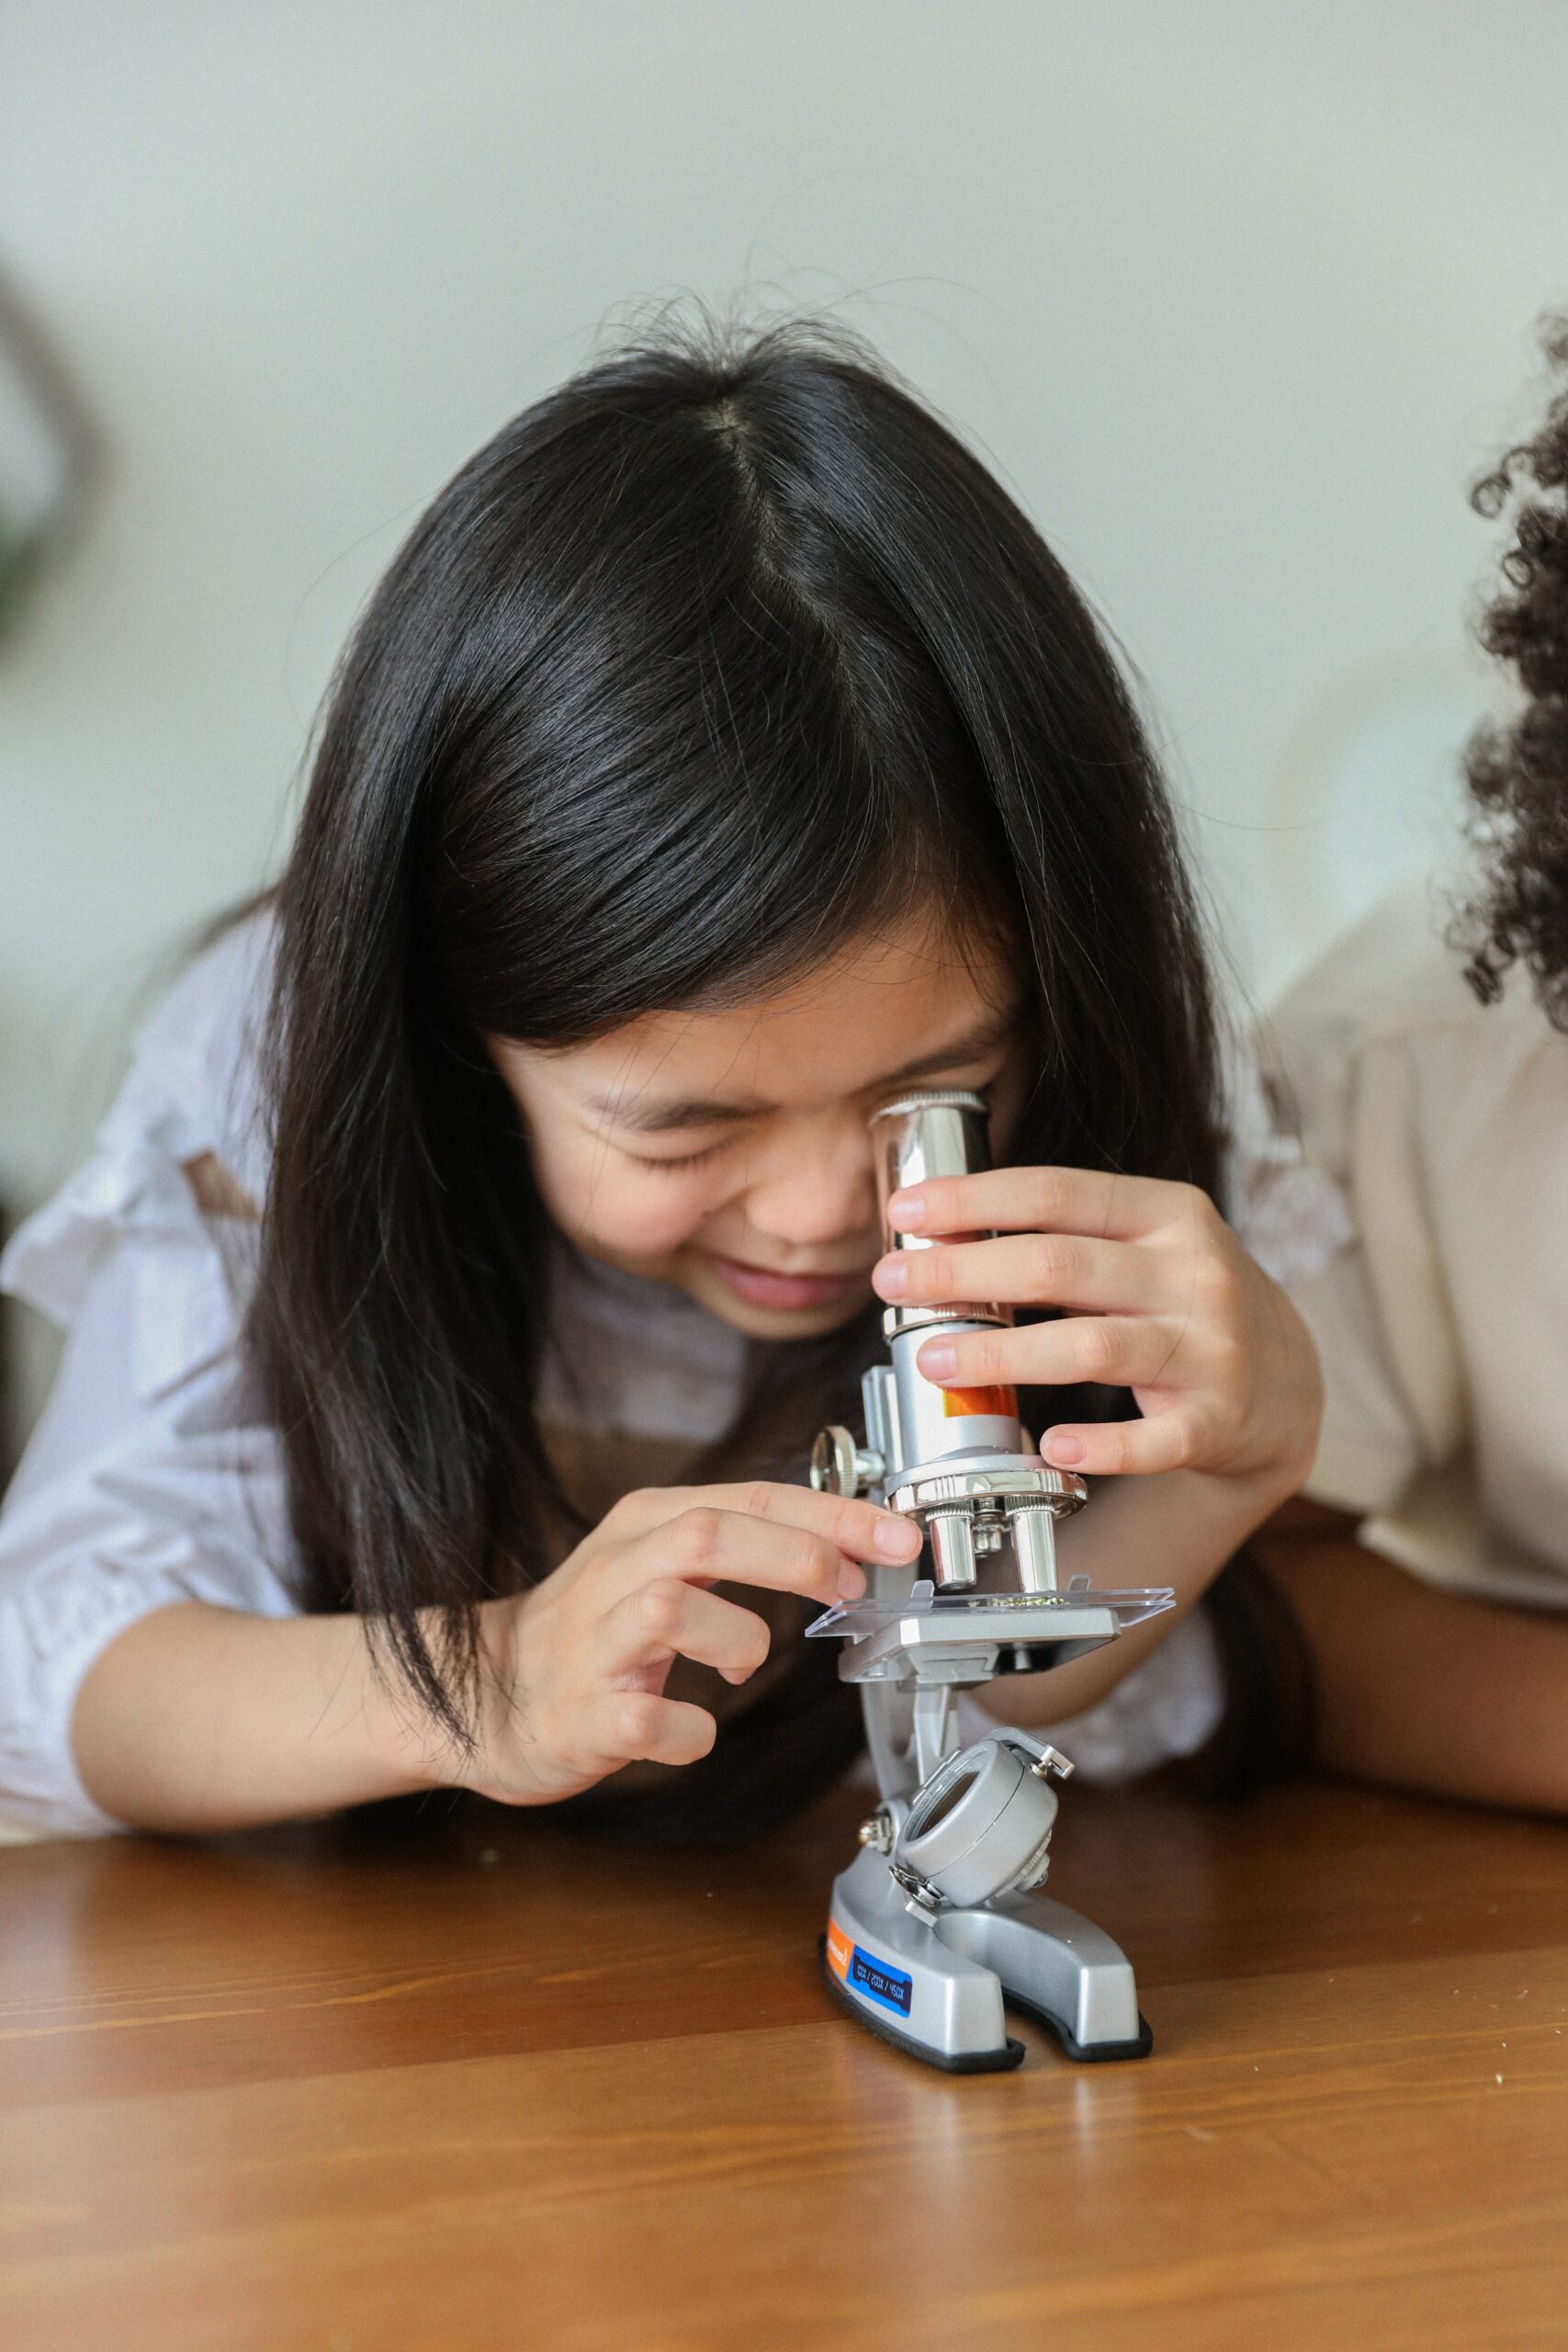 Child peers into microscope